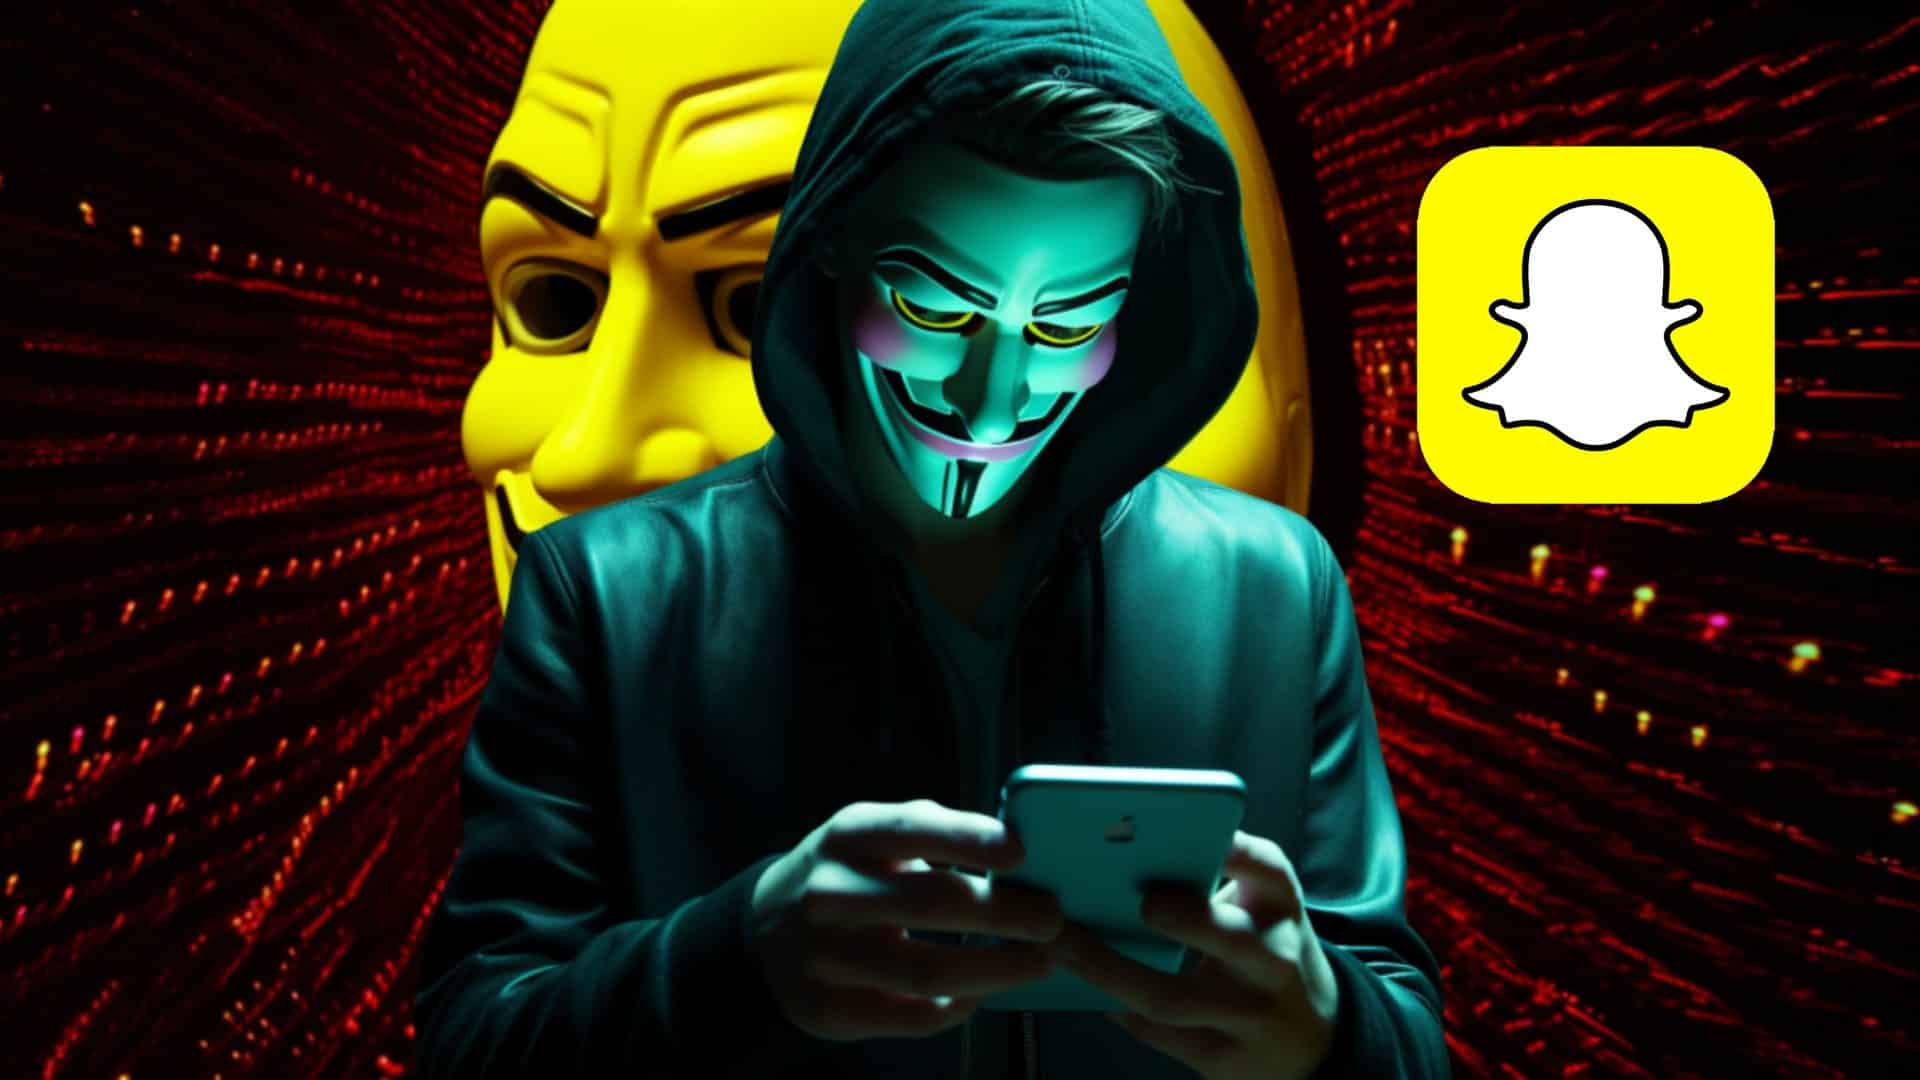 Hacker anonimous hackeando snapchat en un telefono movil